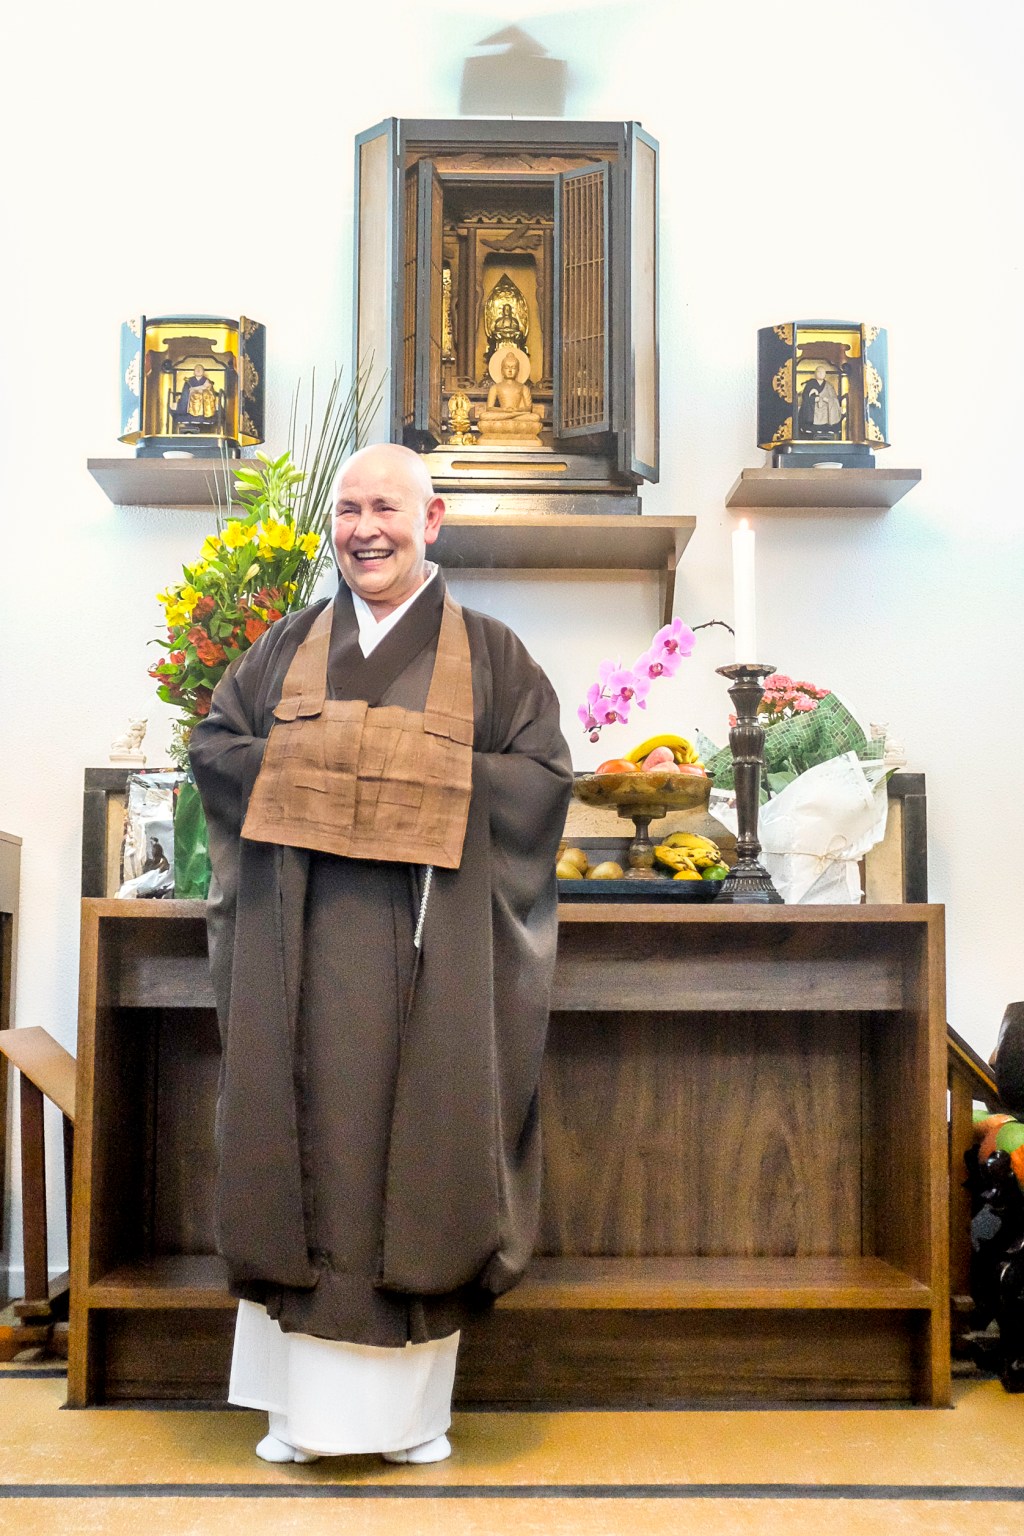 Monja Coen: “Minha tarefa como monja zen budista é provocar as pessoas a despertar, sentir prazer na existência, viver uma vida agradável e saudável para você e para todos”